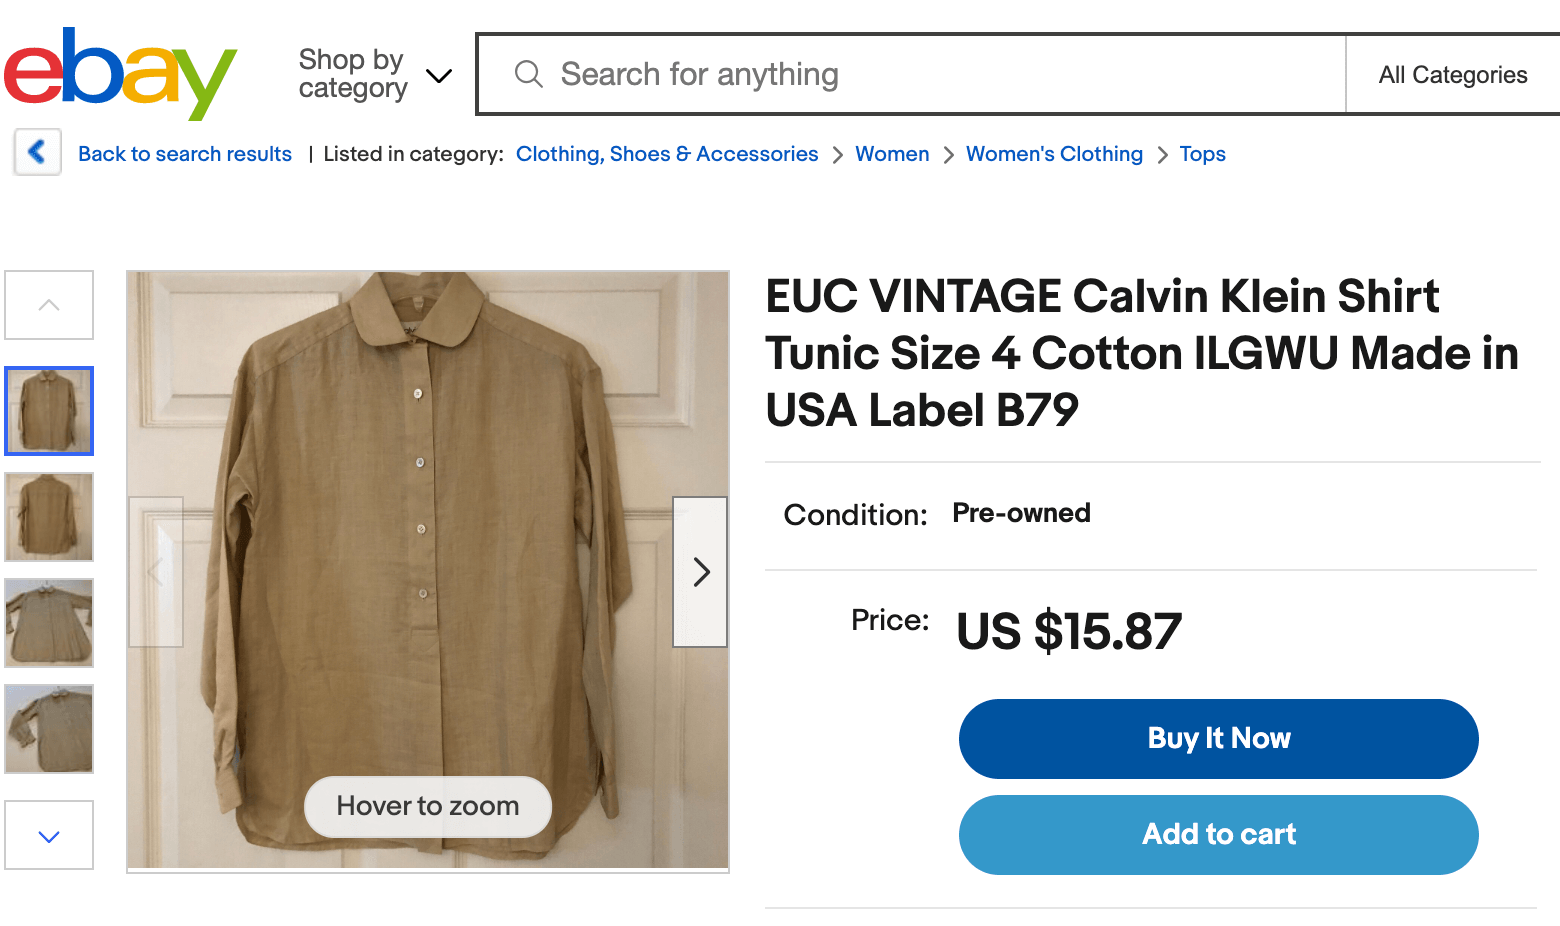 An eBay listing for an EUC Calvin Klein shirt